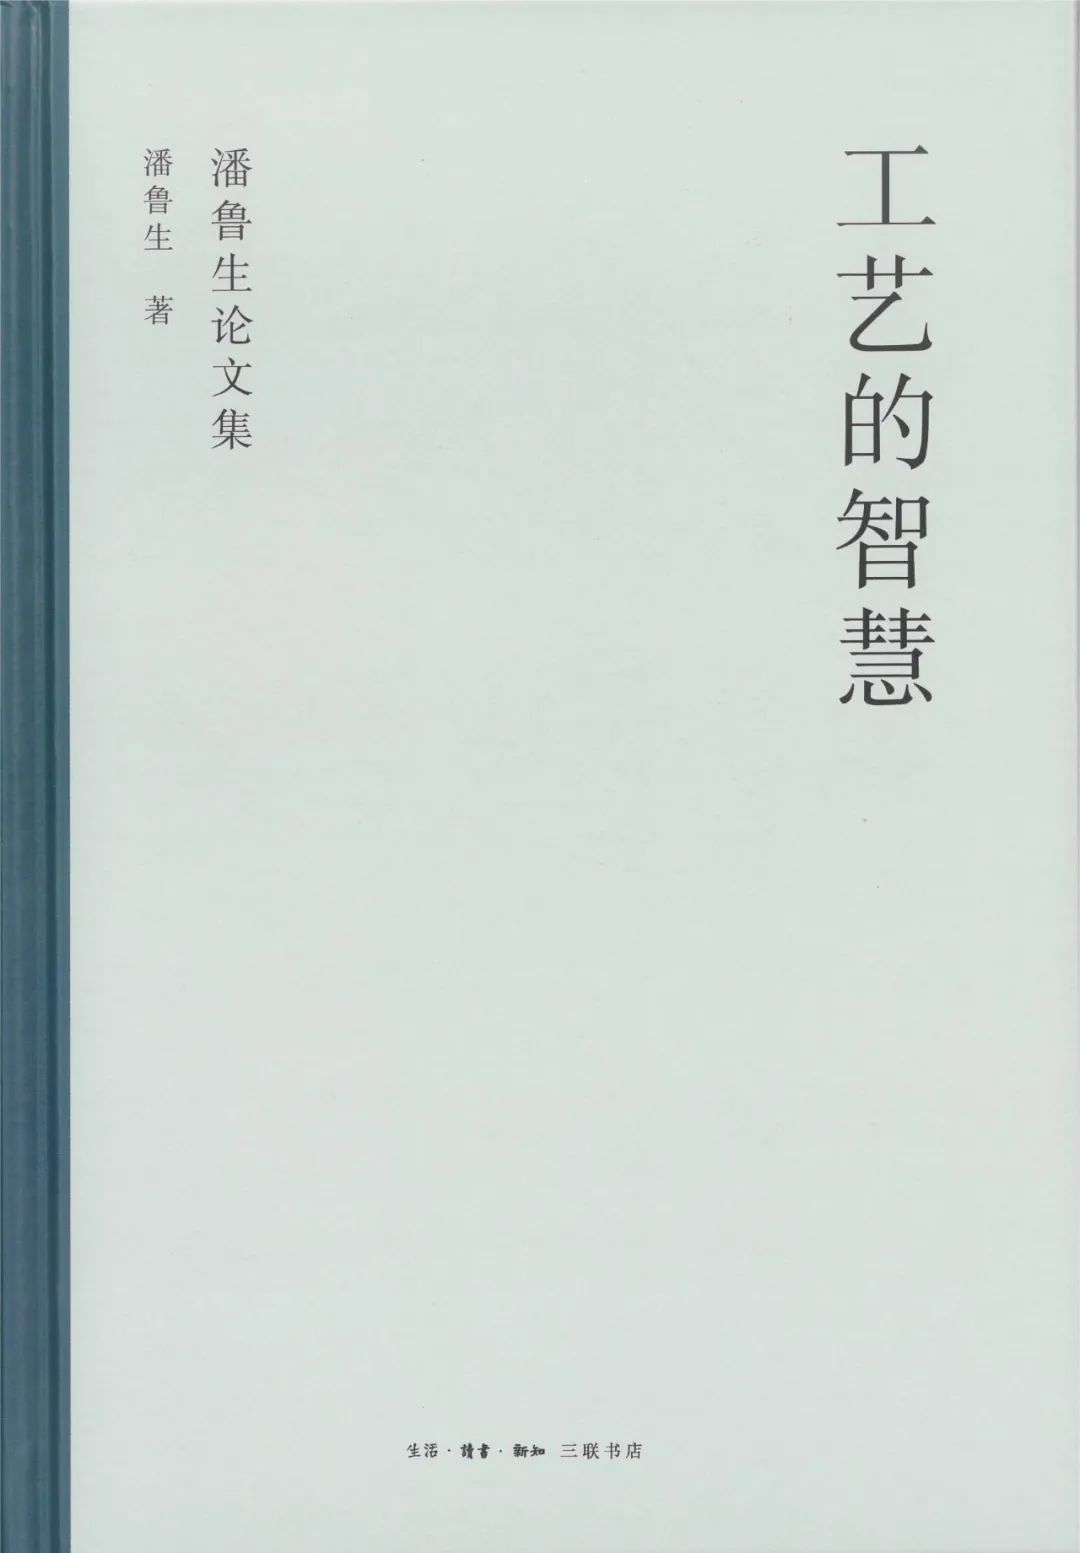 潘鲁生新书《工艺的智慧》由三联书店出版